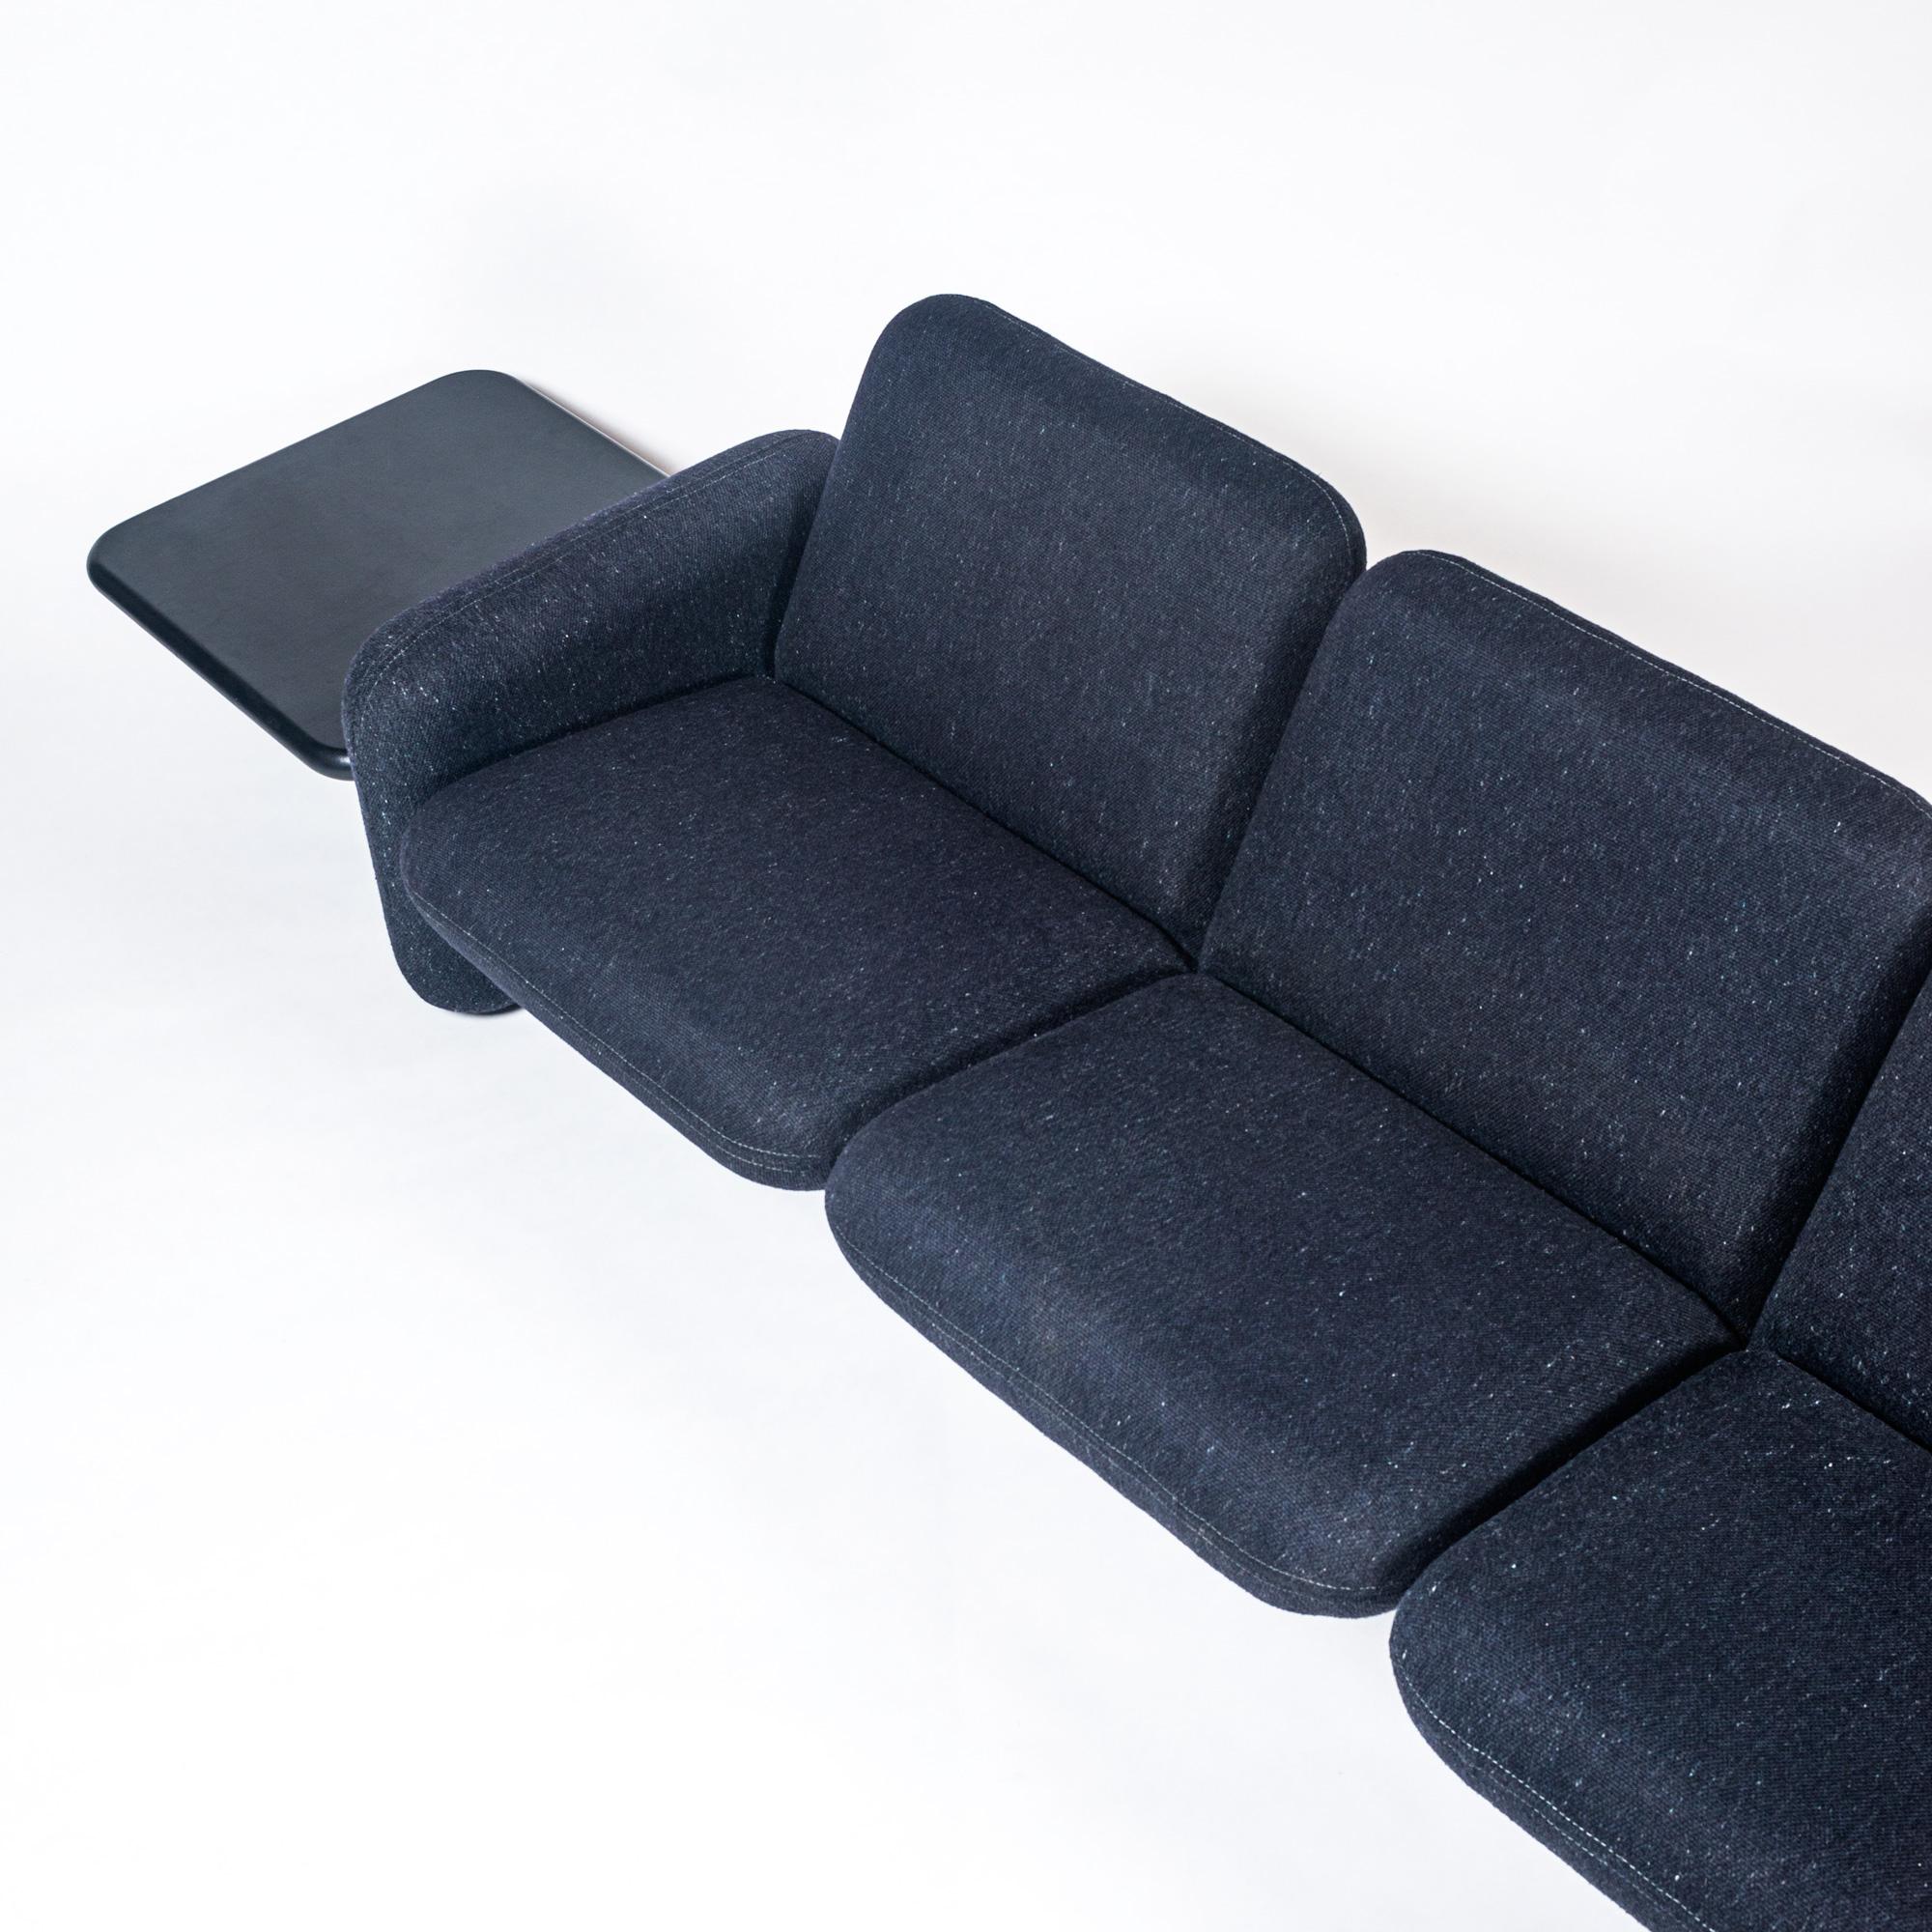 Canapé chiclet 3 places avec tables d'appoint en cuir noir, conçu par Ray Wilkes pour Herman Miller, vers les années 1970. Le canapé est en tissu de laine bleu et noir d'origine. Can peut fabriquer de nouvelles tables d'appoint en bois dur moyennant